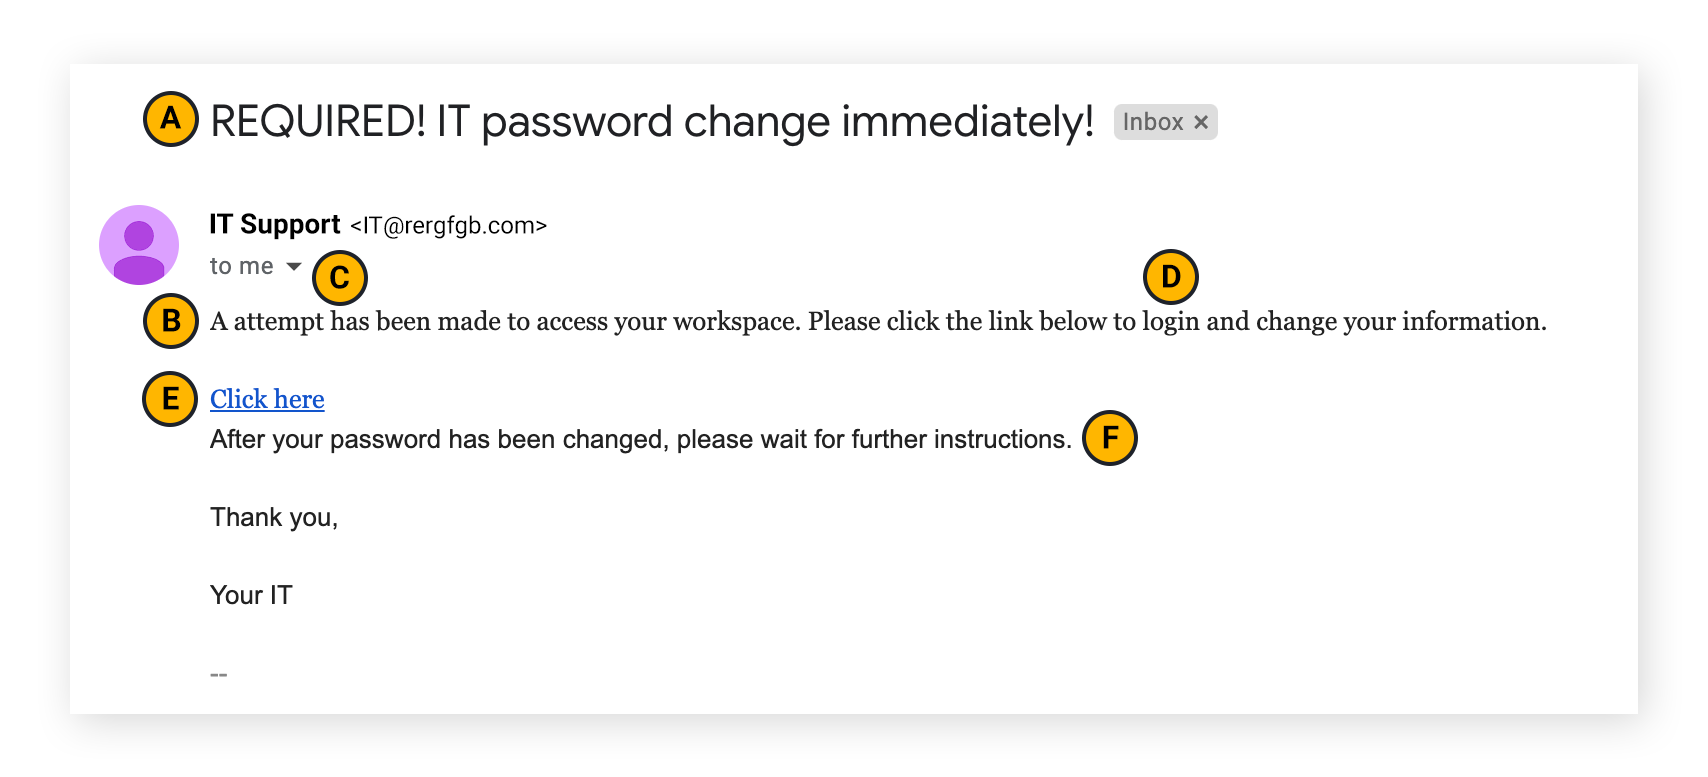 Un correo electrónico de phishing personalizado a menudo incluye errores sutiles (u obvios) después de una inspección más cercana.